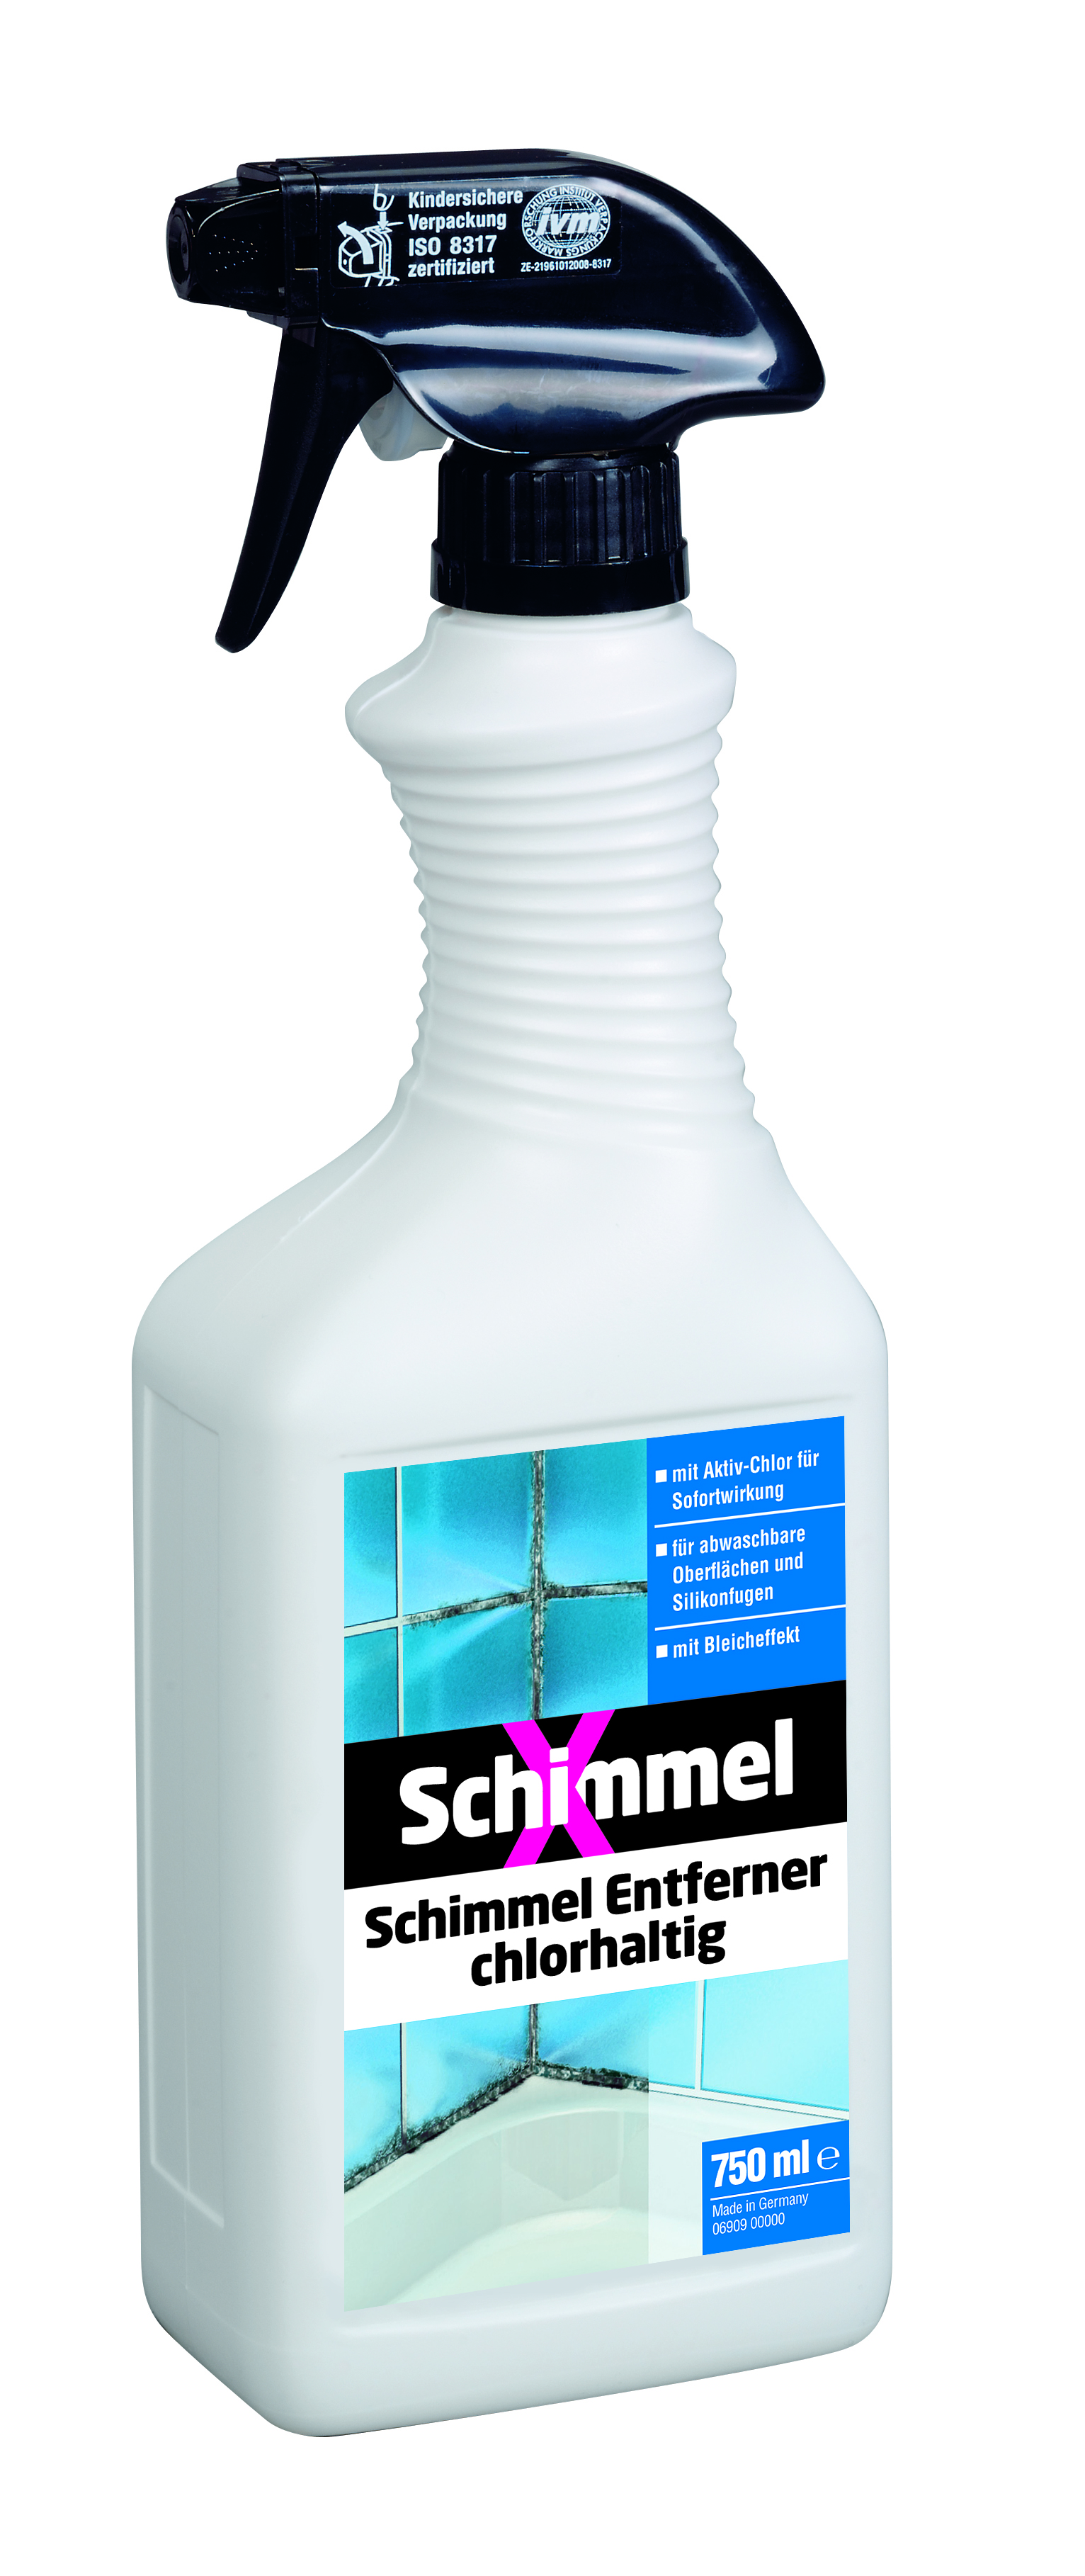 SchimmelX Entferner chlorhaltig 0,75 L